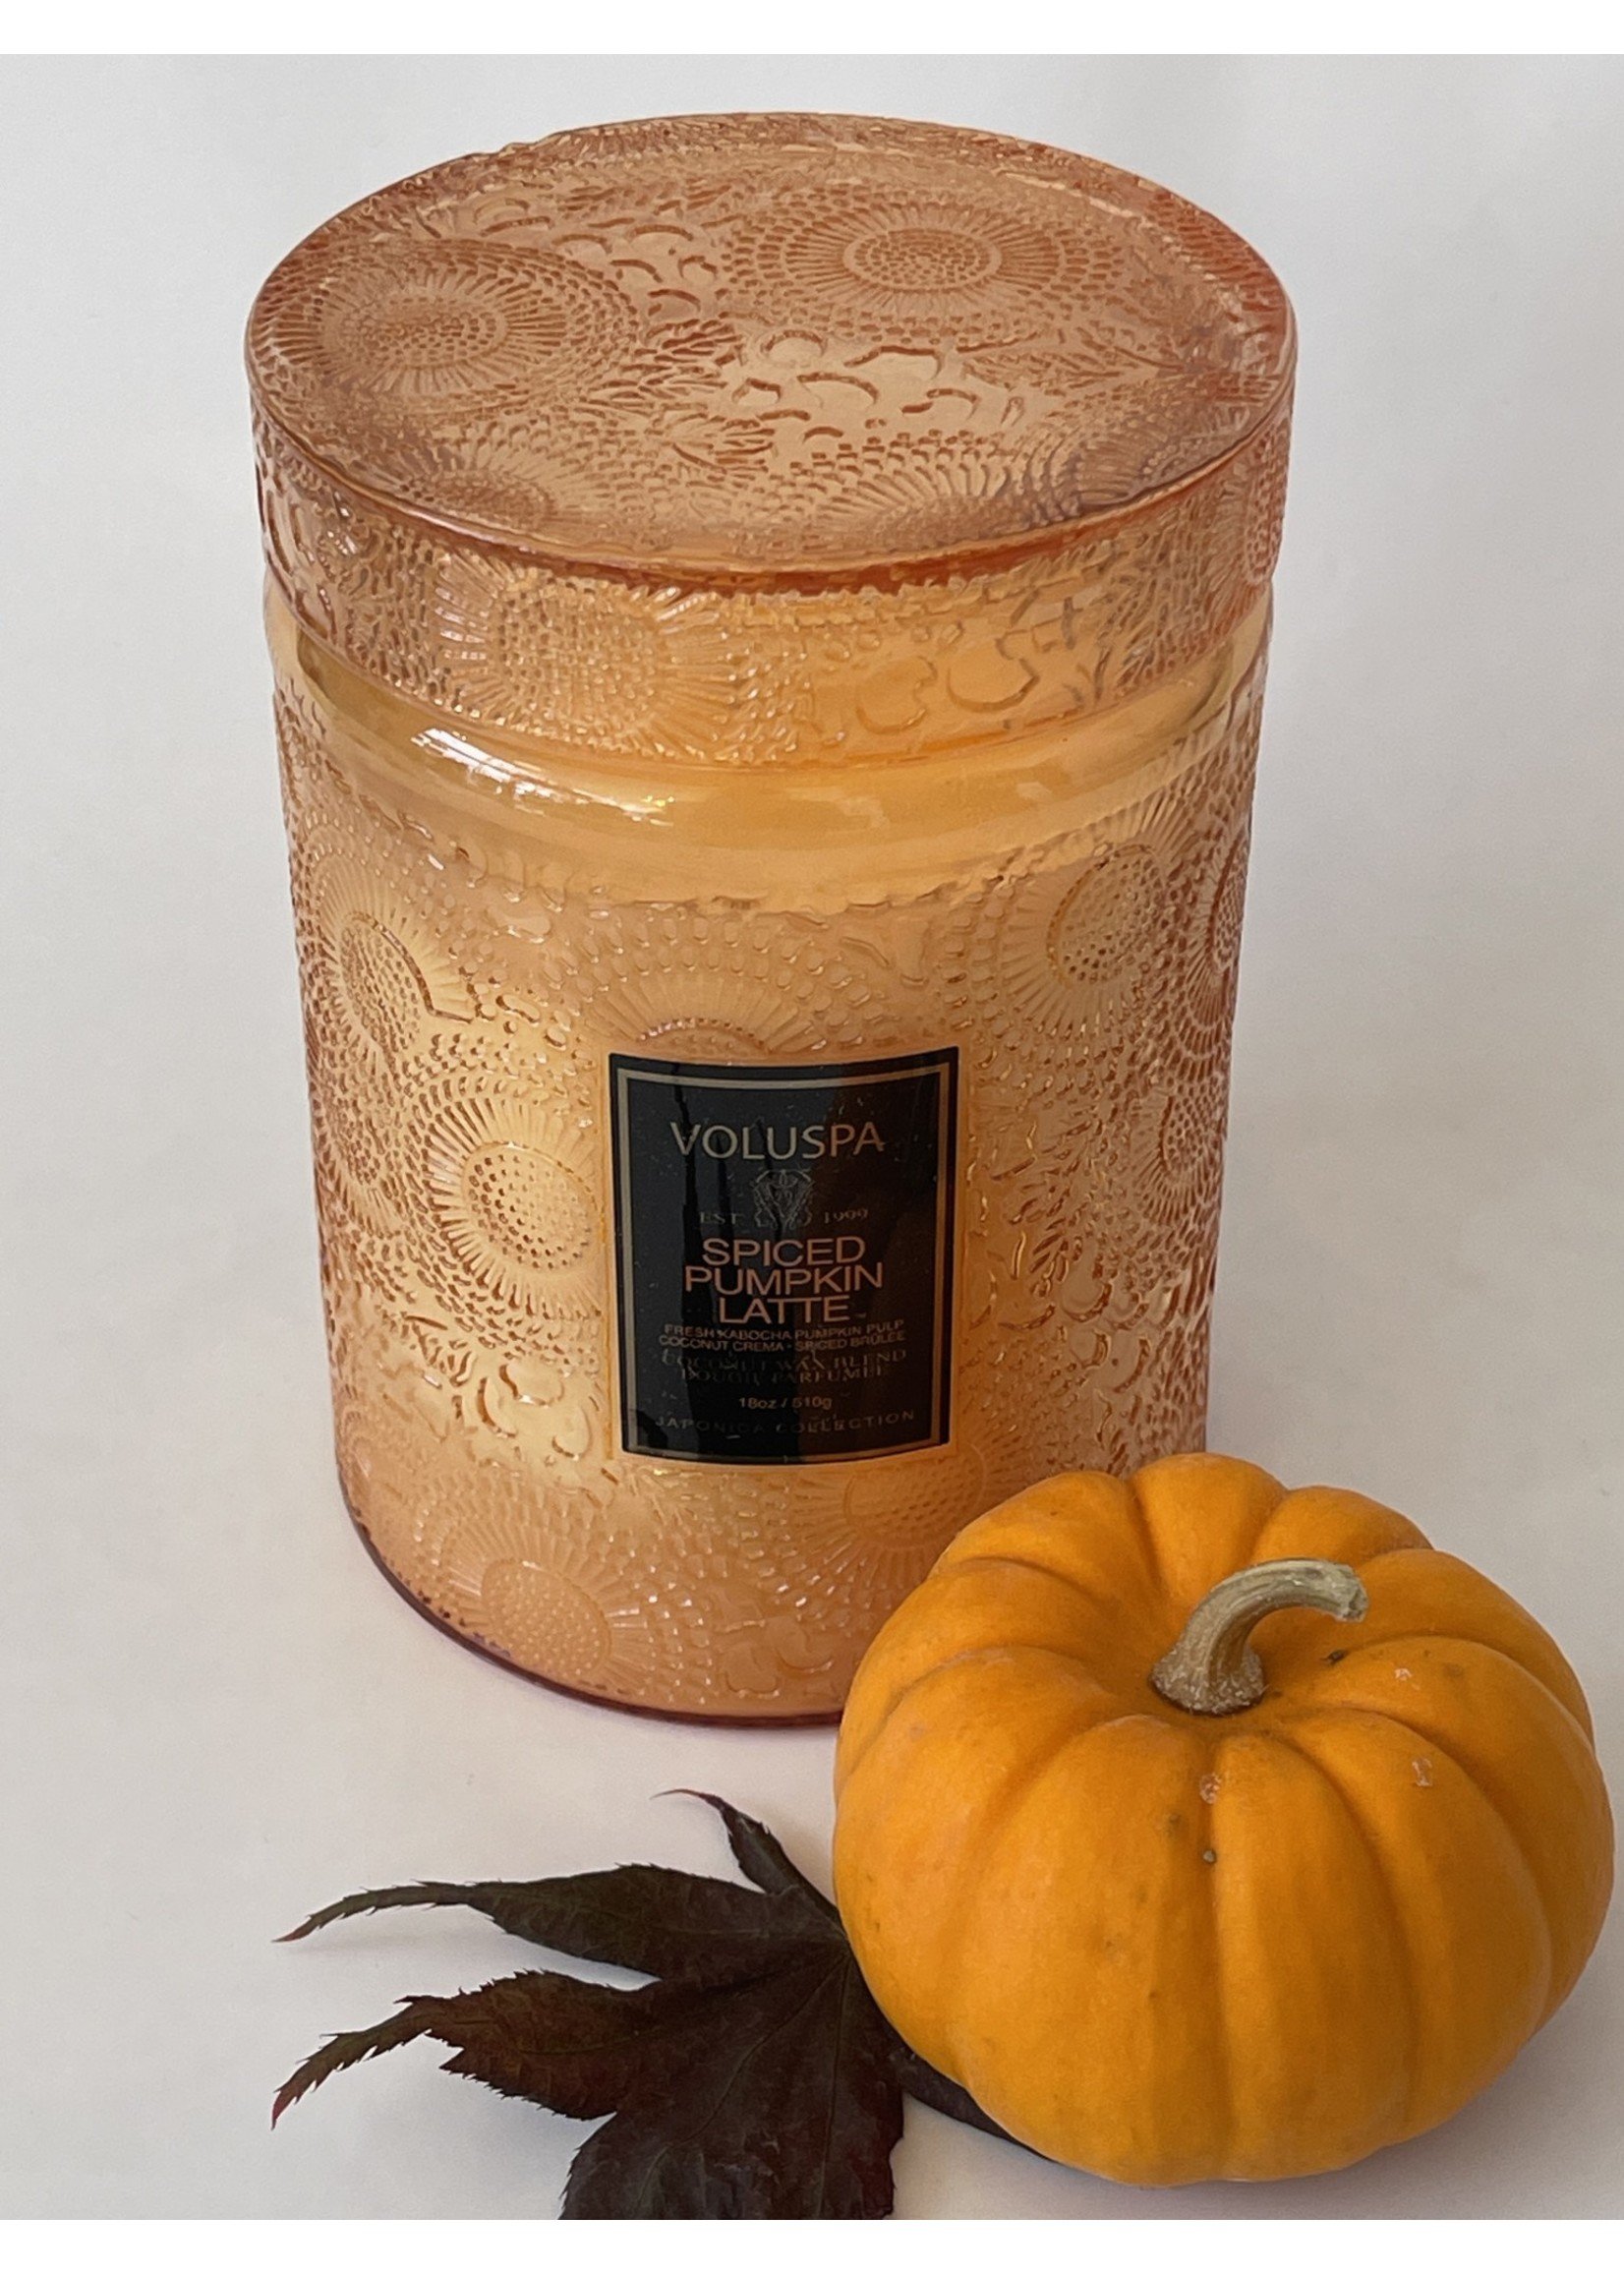 Voluspa Spiced Pumpkin Large Jar